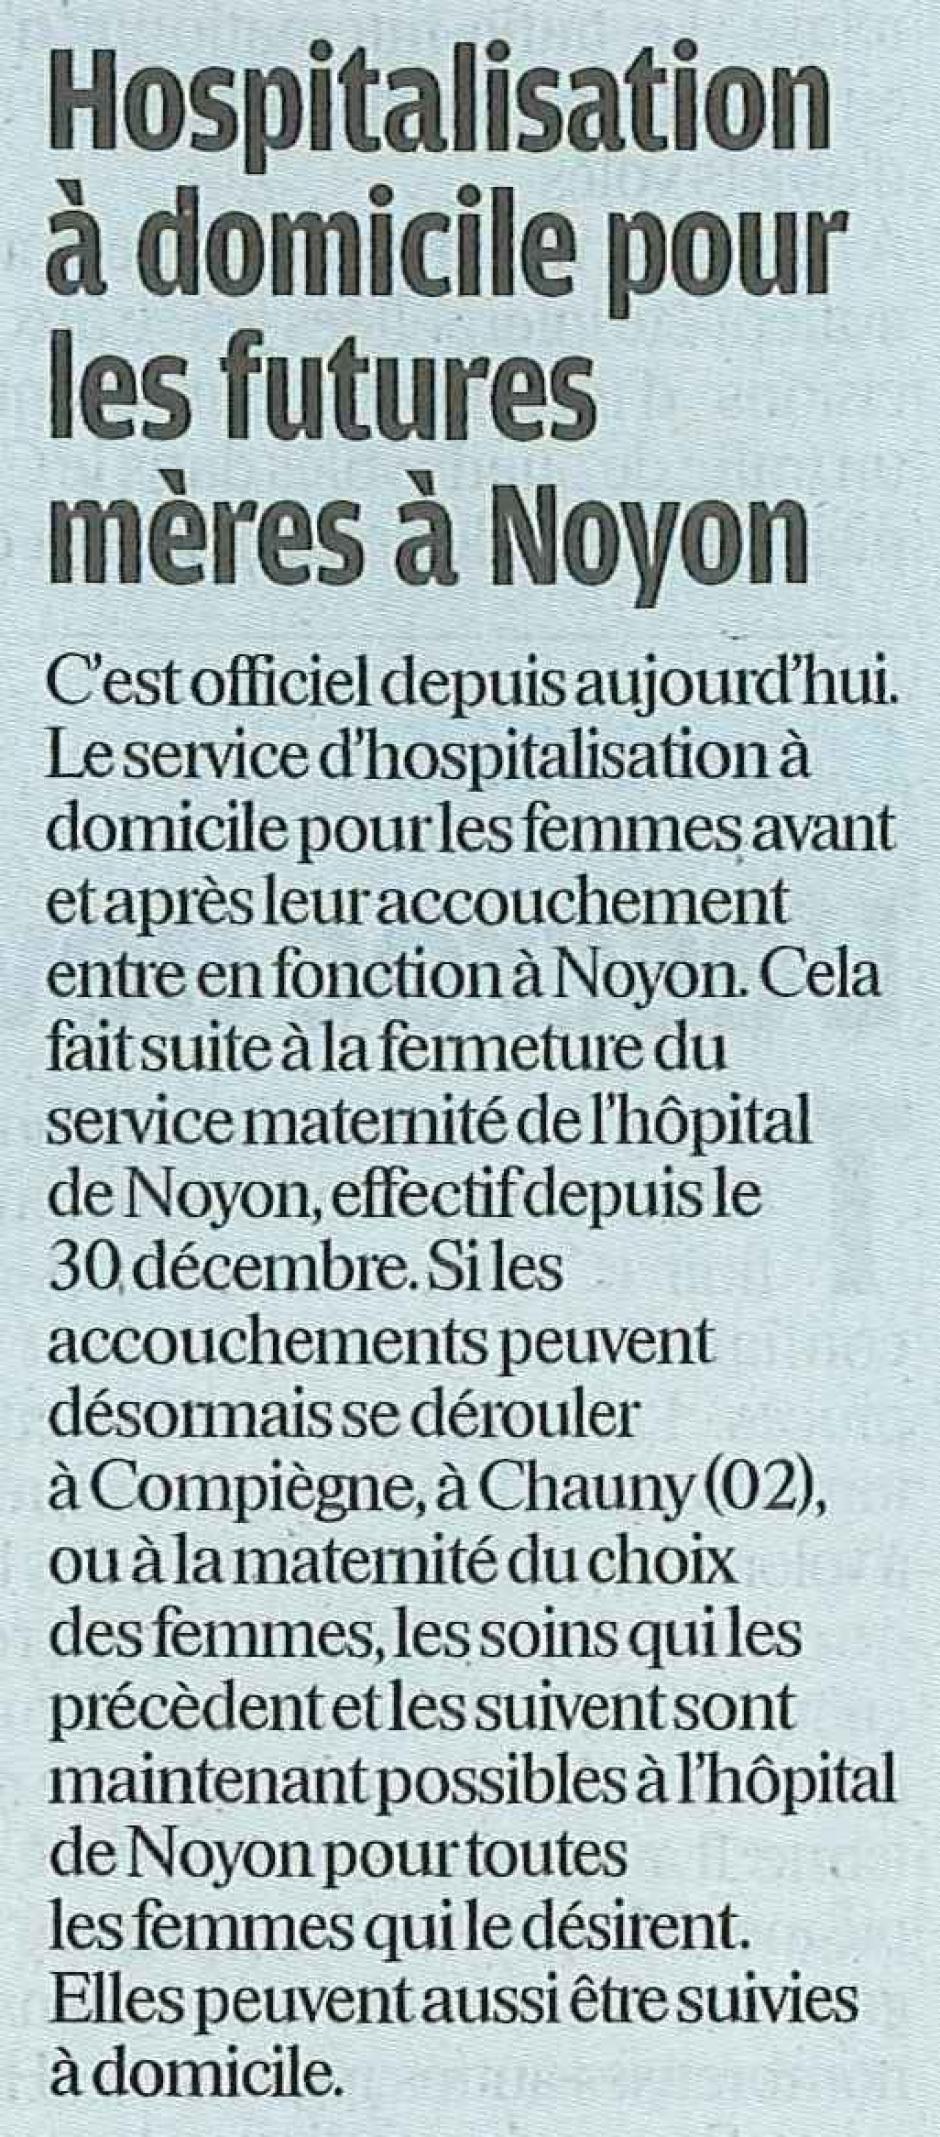 20120209-LeP-Noyon-Hospitalisation à domicile pour les futures mères